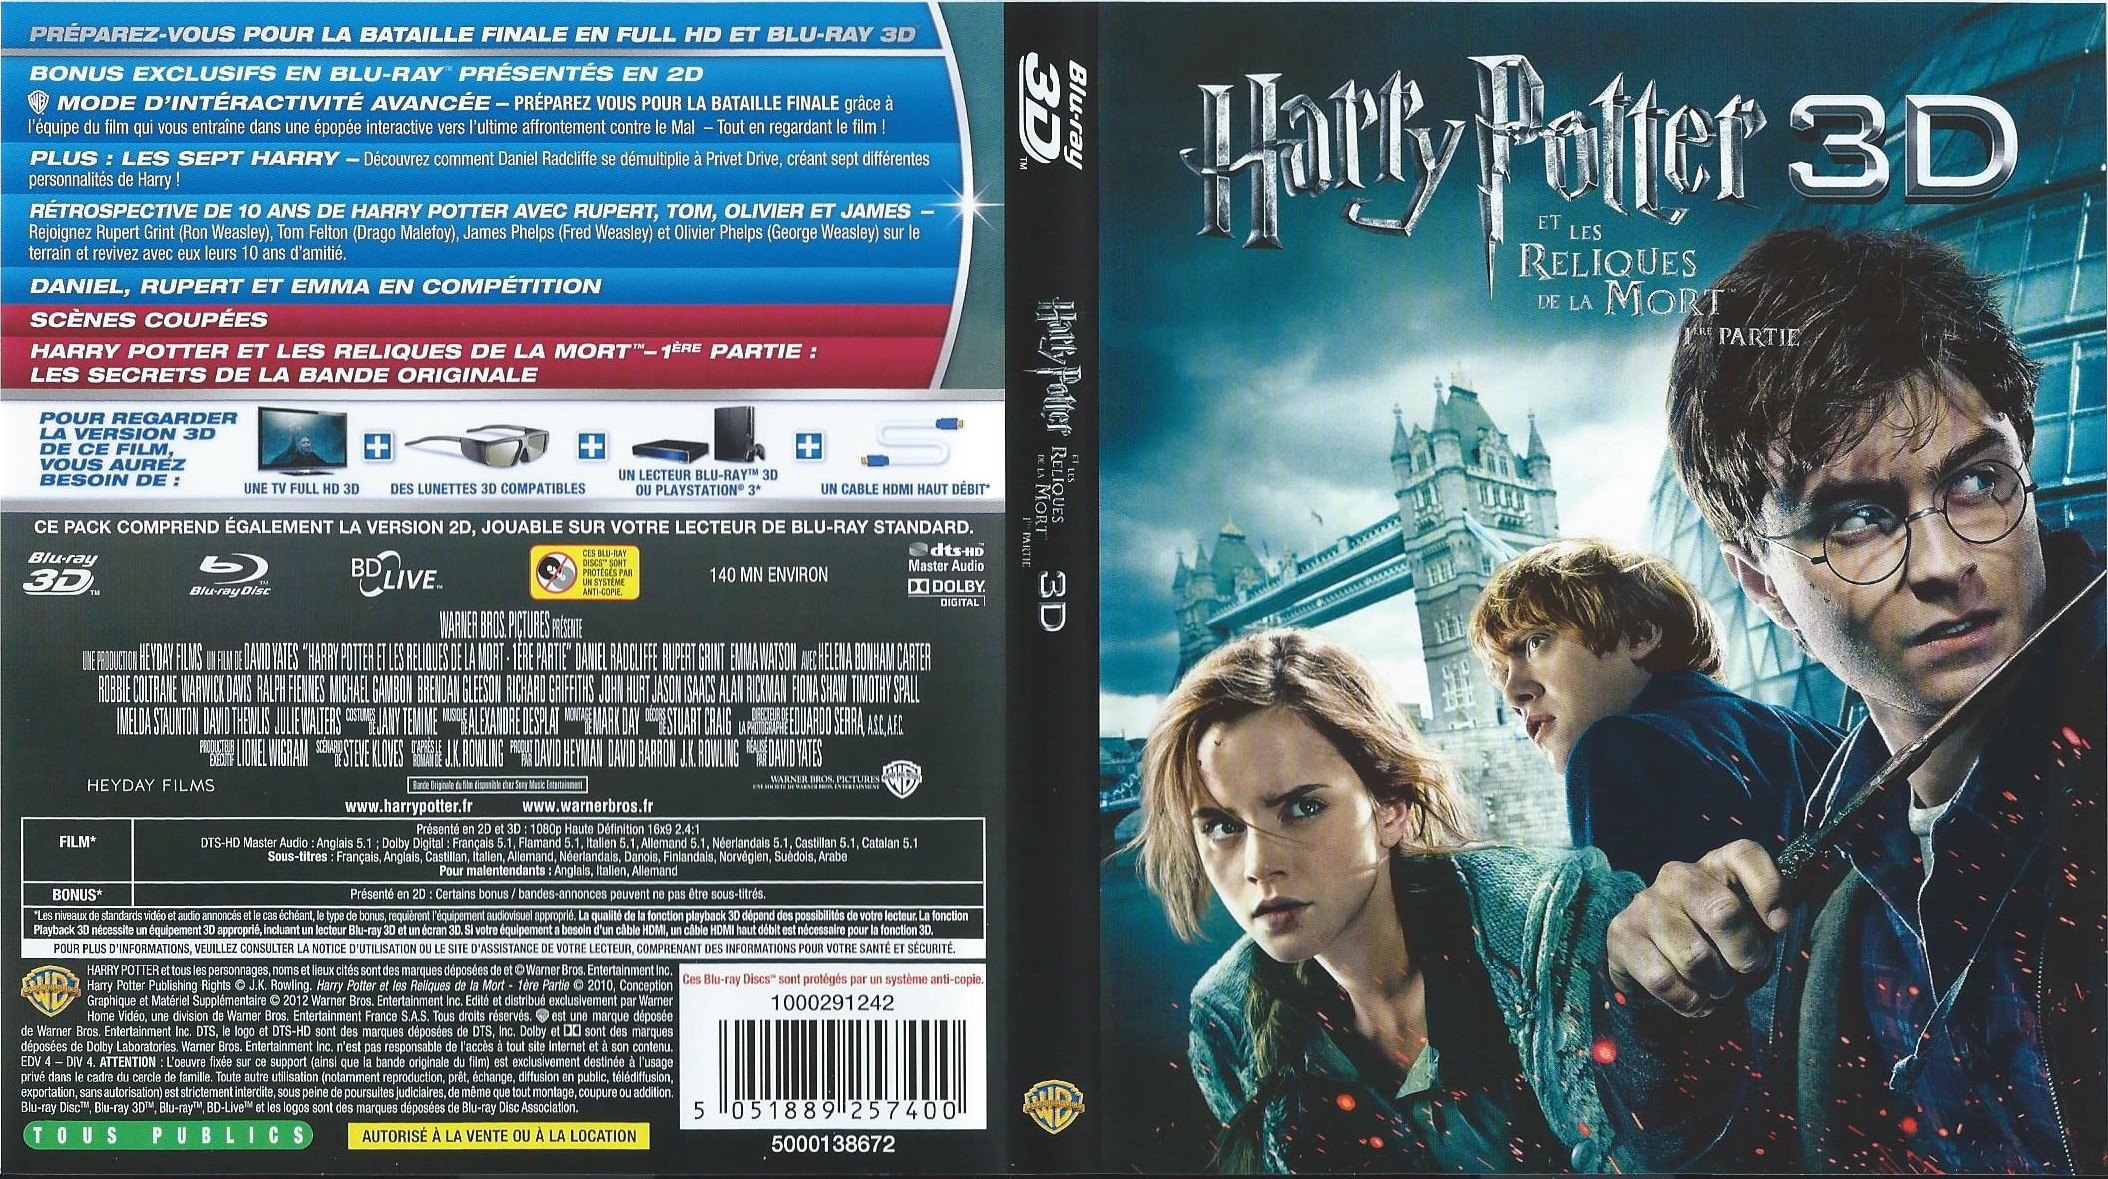 Jaquette DVD Harry Potter et les reliques de la mort - 1re partie 3D (BLU-RAY)